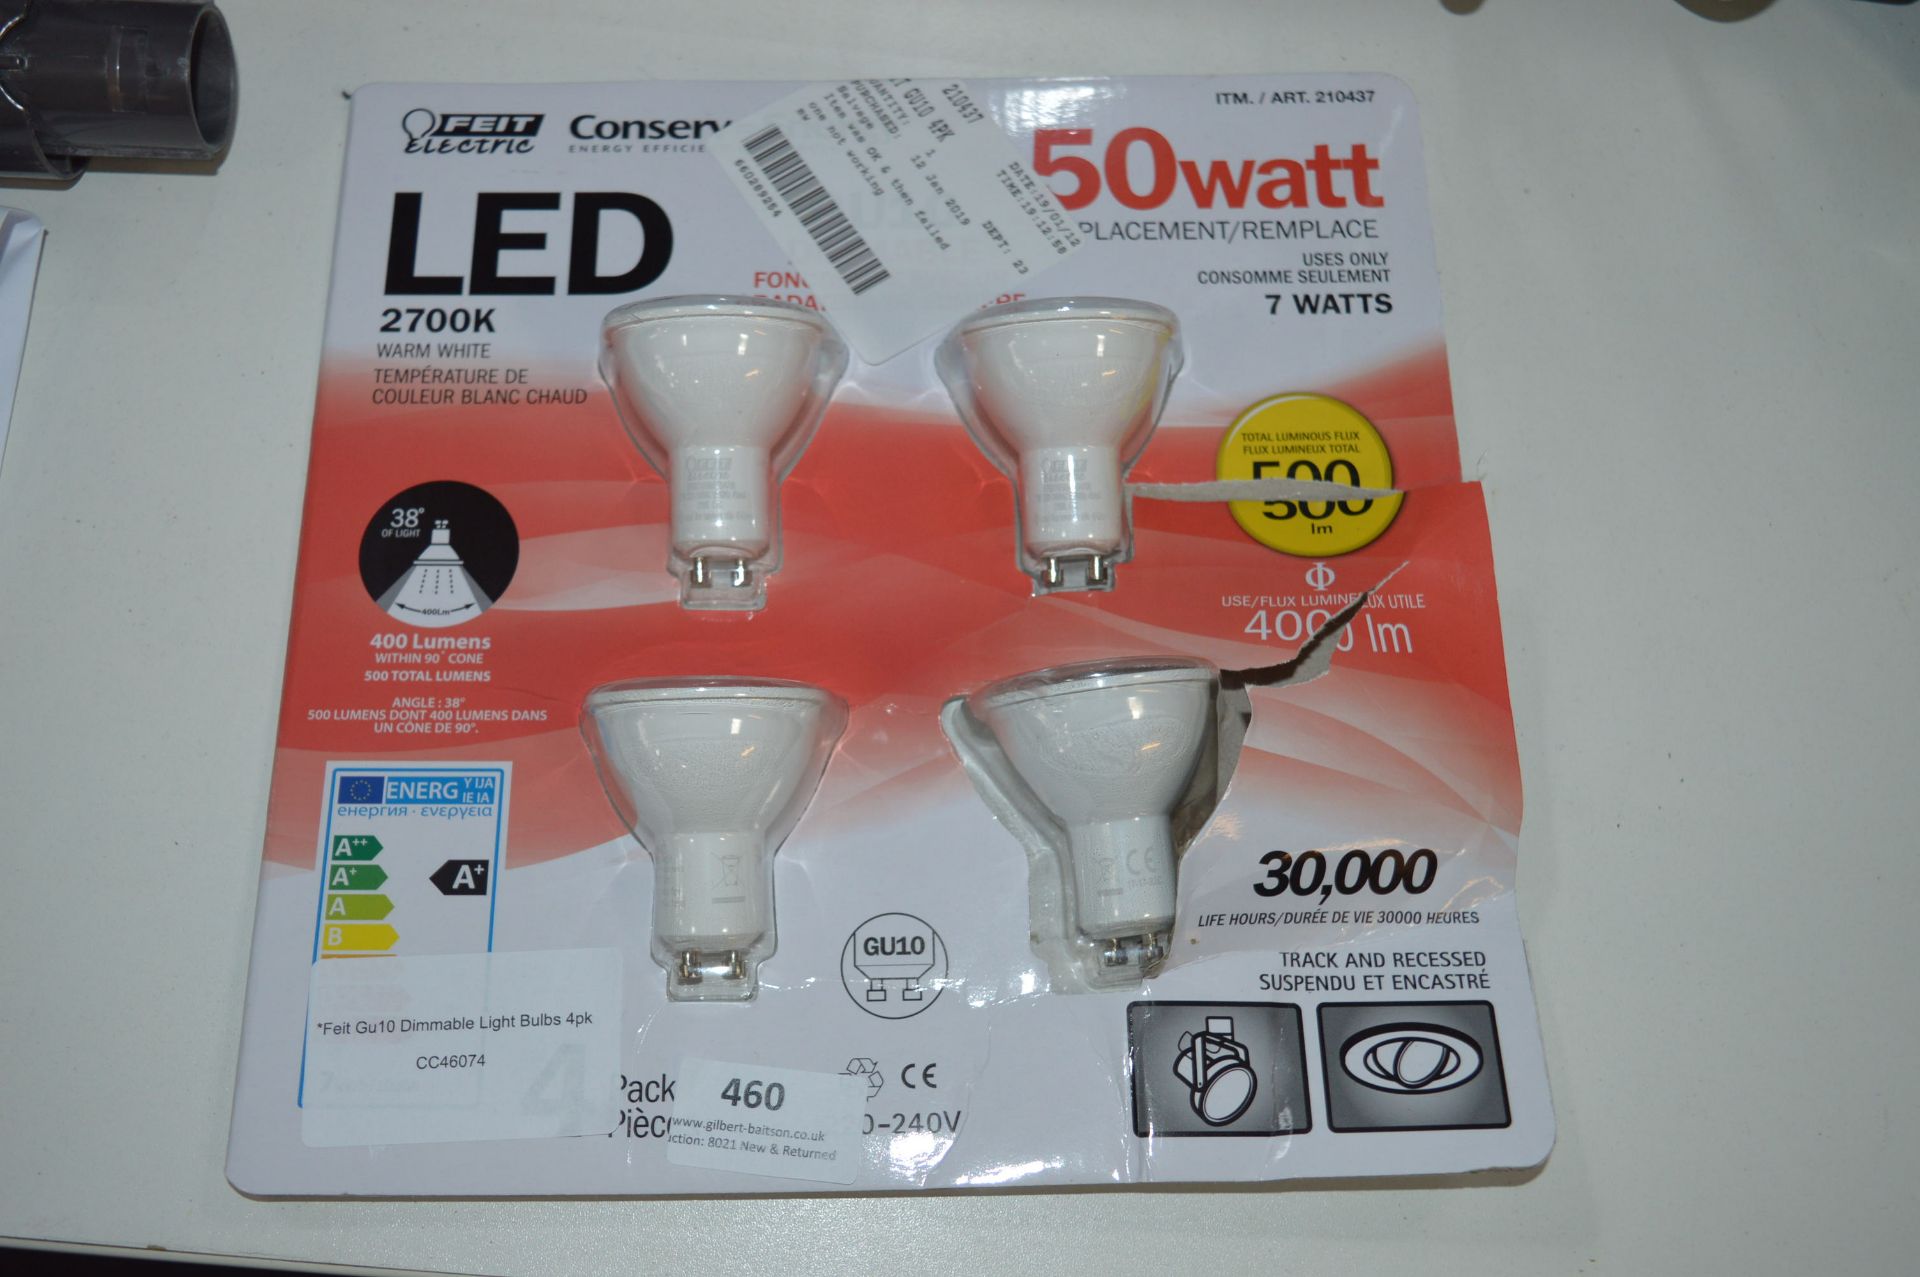 *Feit Gu10 Dimmable Light Bulbs 4pk